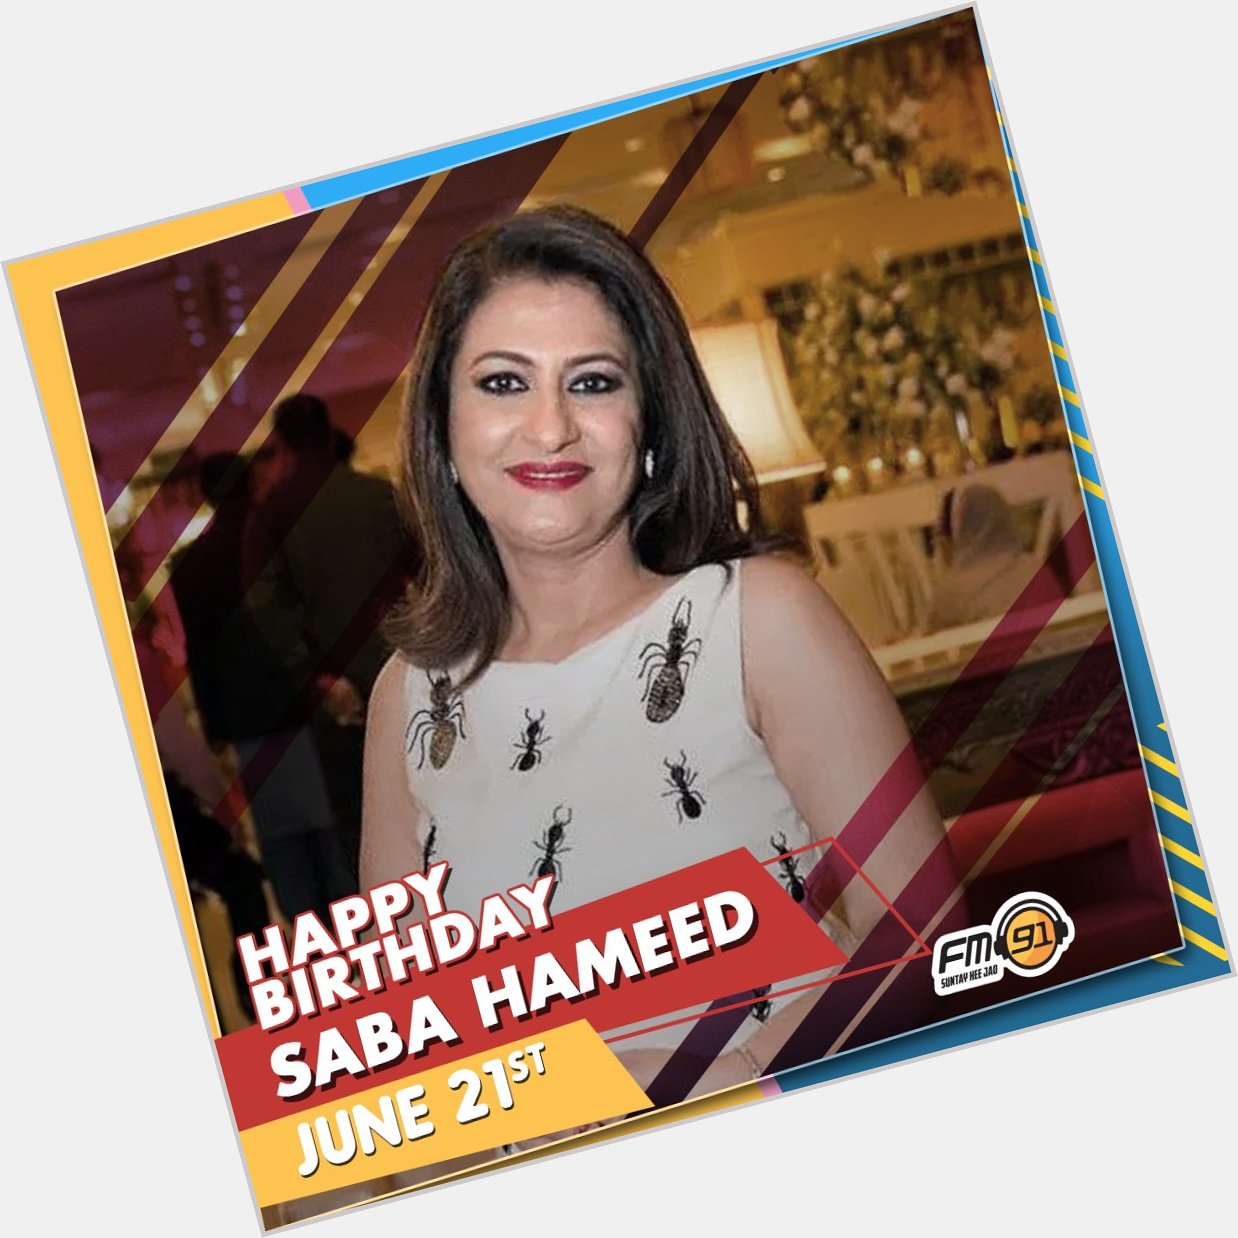 Wishing Saba Hameed a very Happy Birthday 